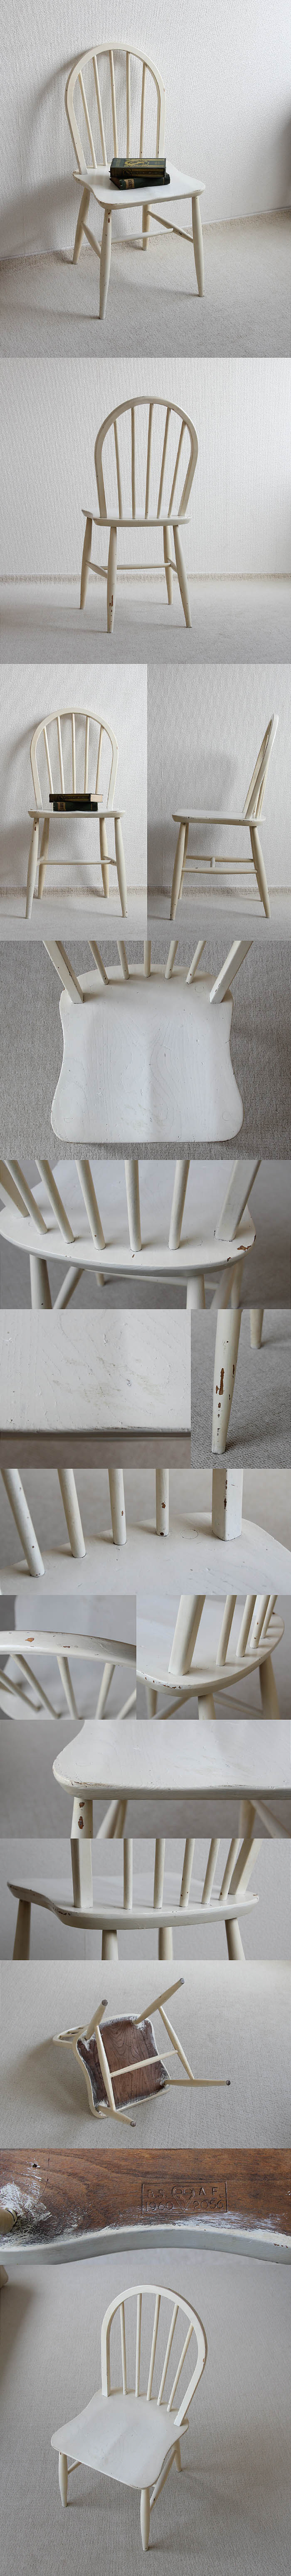 イギリス アンティーク アーコールチェア ERCOL 木製椅子 シャビー ペイント家具「フープバック」V-986